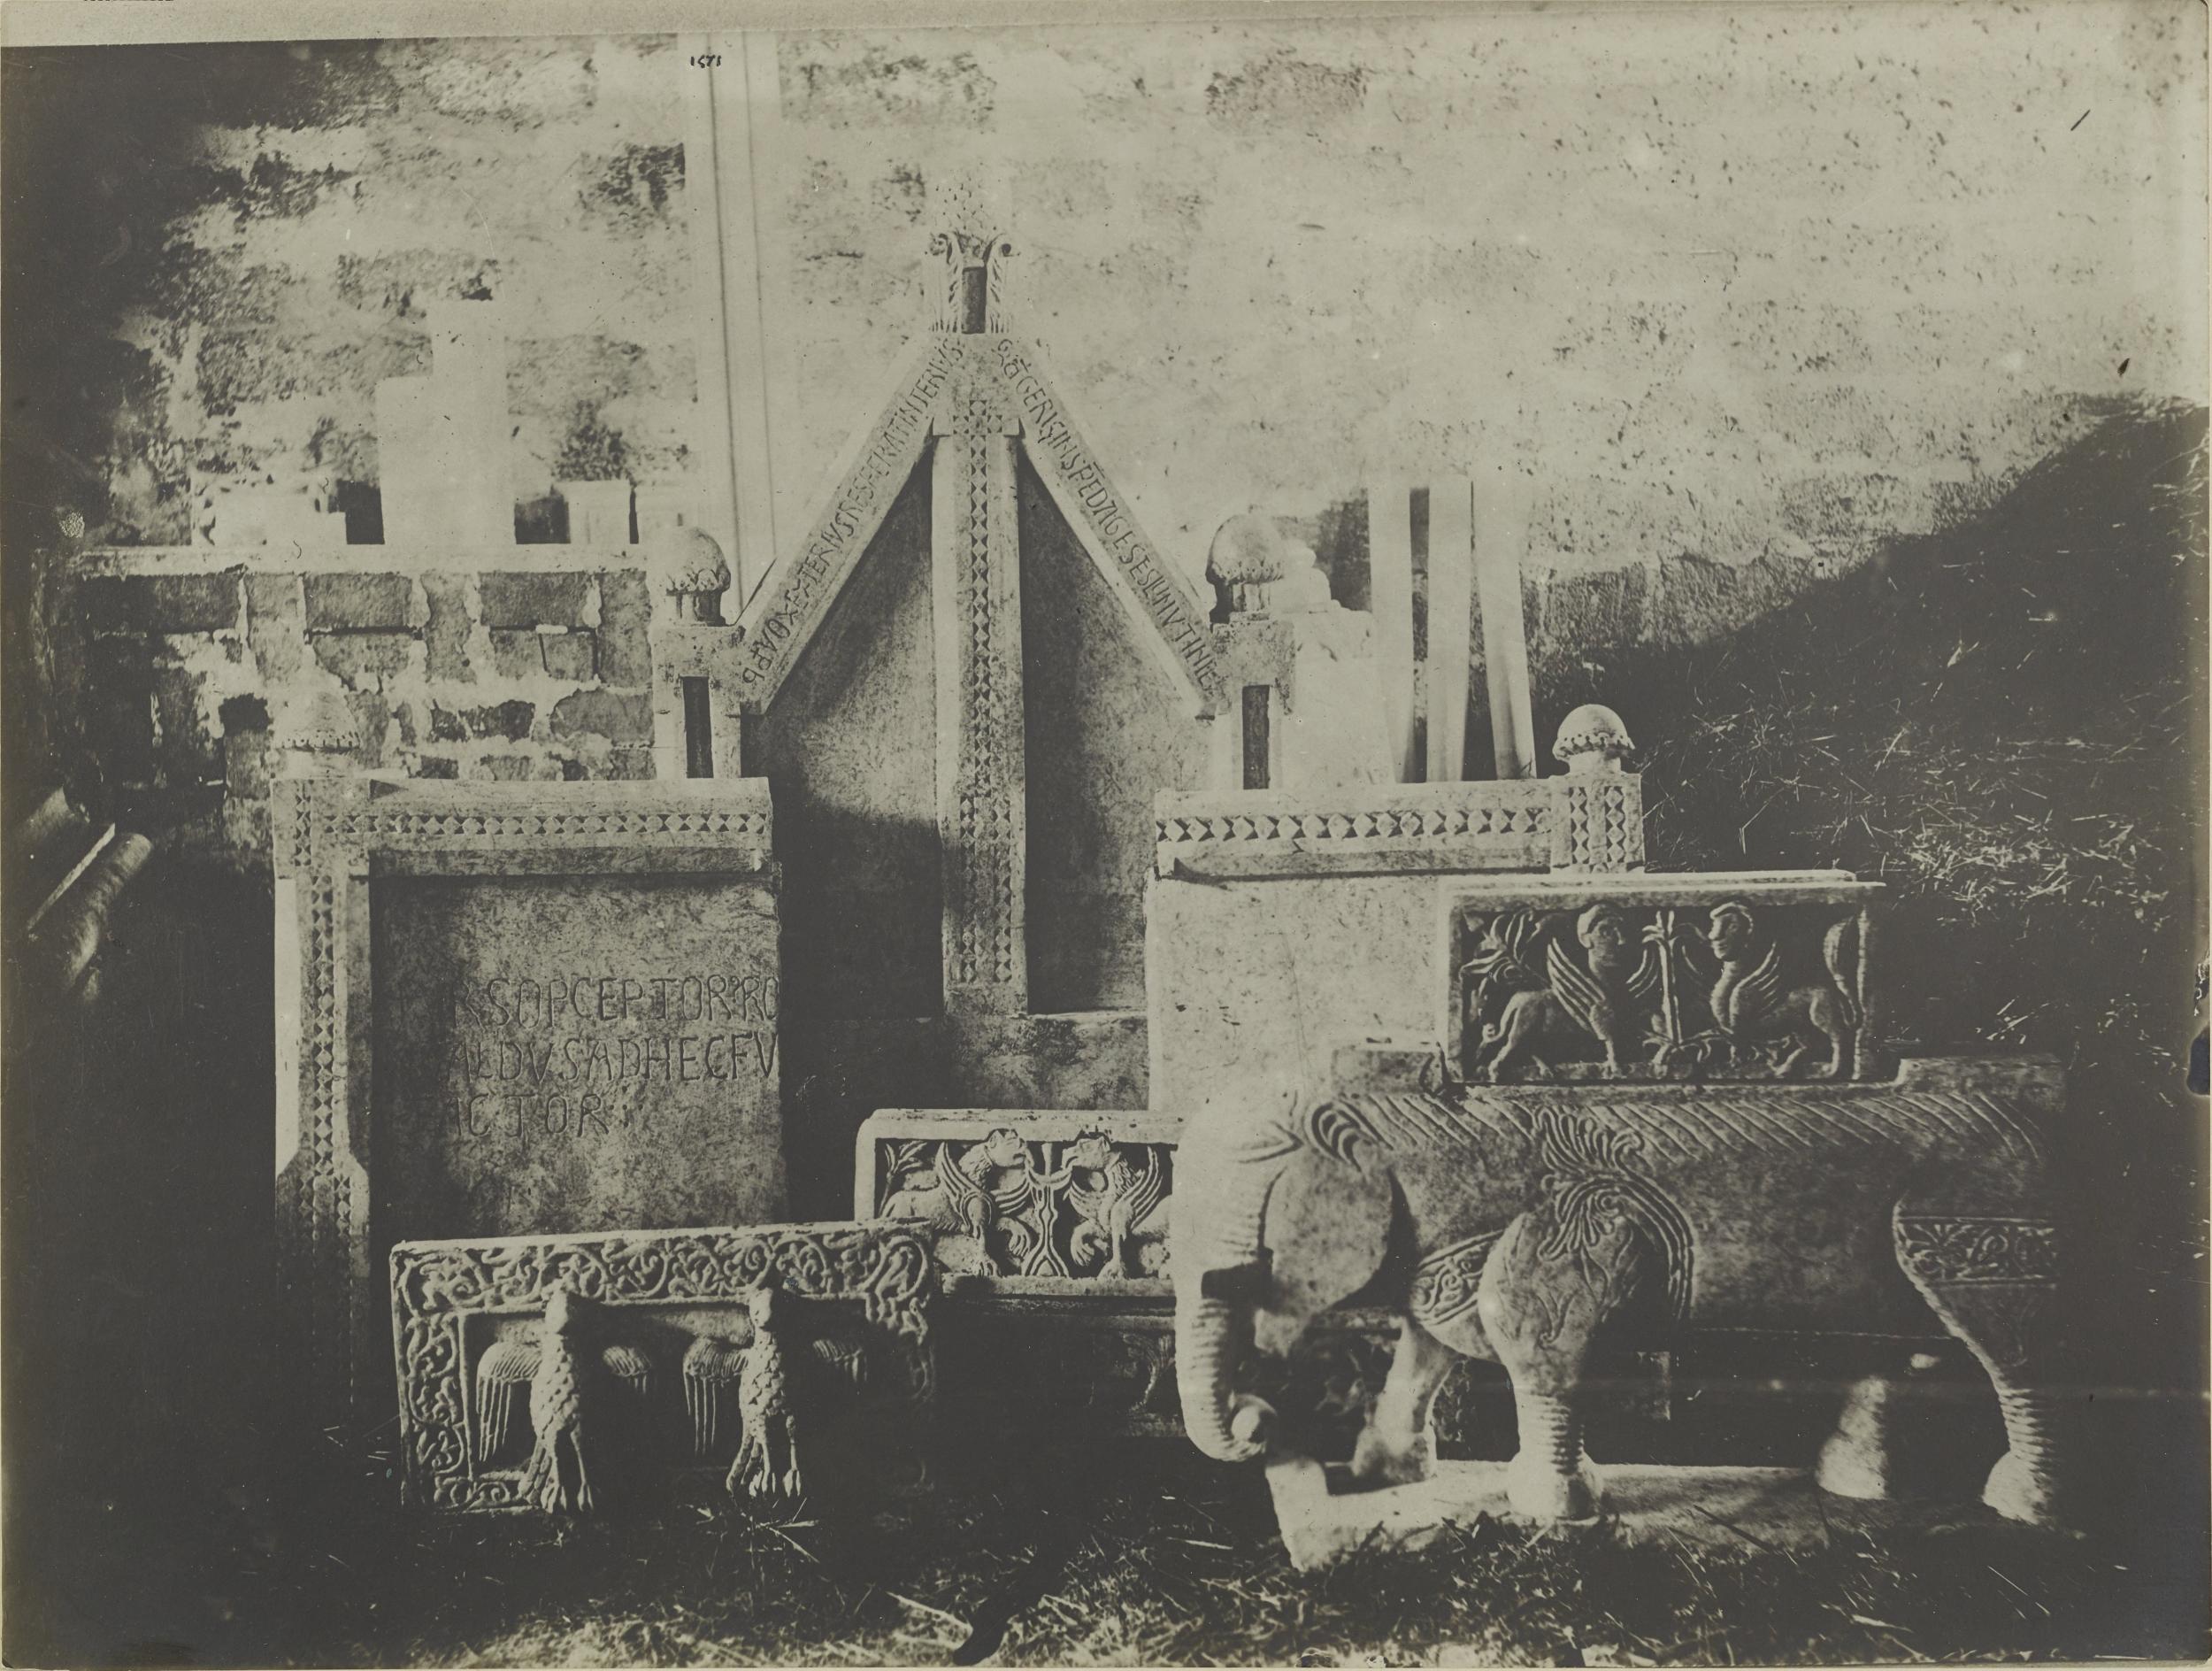 Fotografo non identificato, Bari - Castello, gipsoteca, calchi di elementi scultoreo - decorativi, 1923 post, gelatina ai sali d'argento/carta, MPI325329